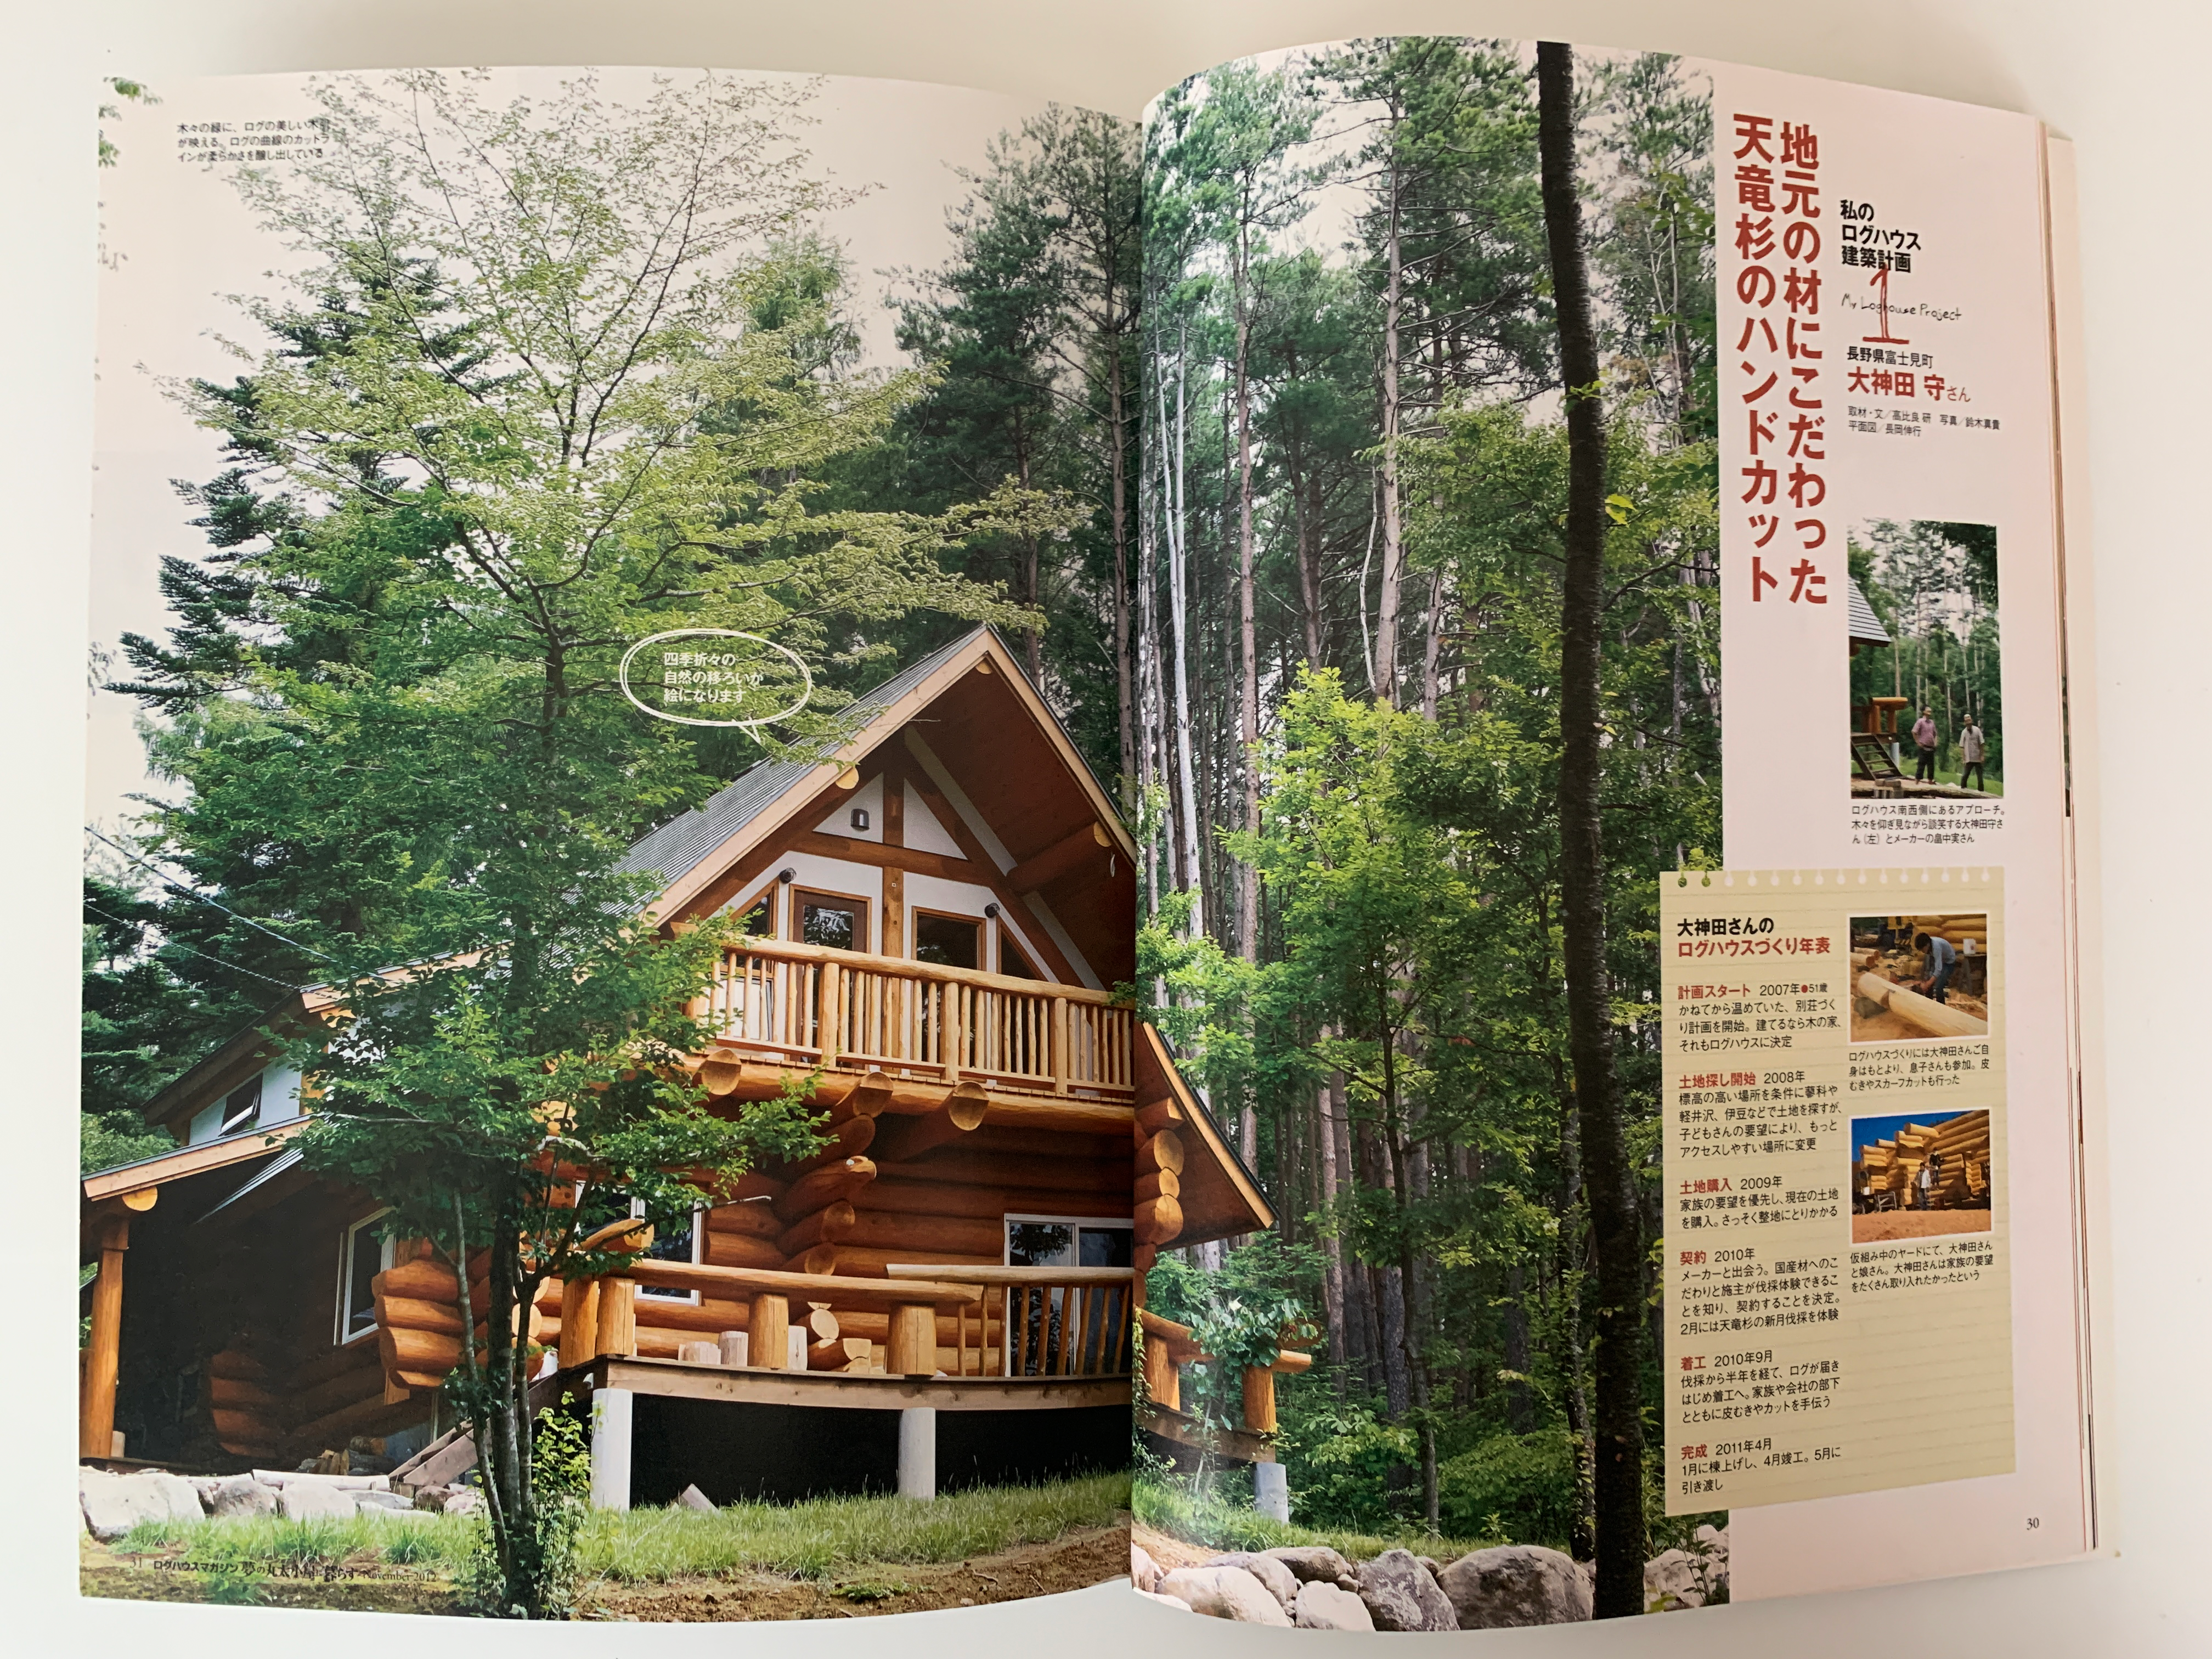 メディア掲載 森のすまい工房 有限会社アシスト 八ヶ岳でログハウスや木の家の設計施工を行う建築会社